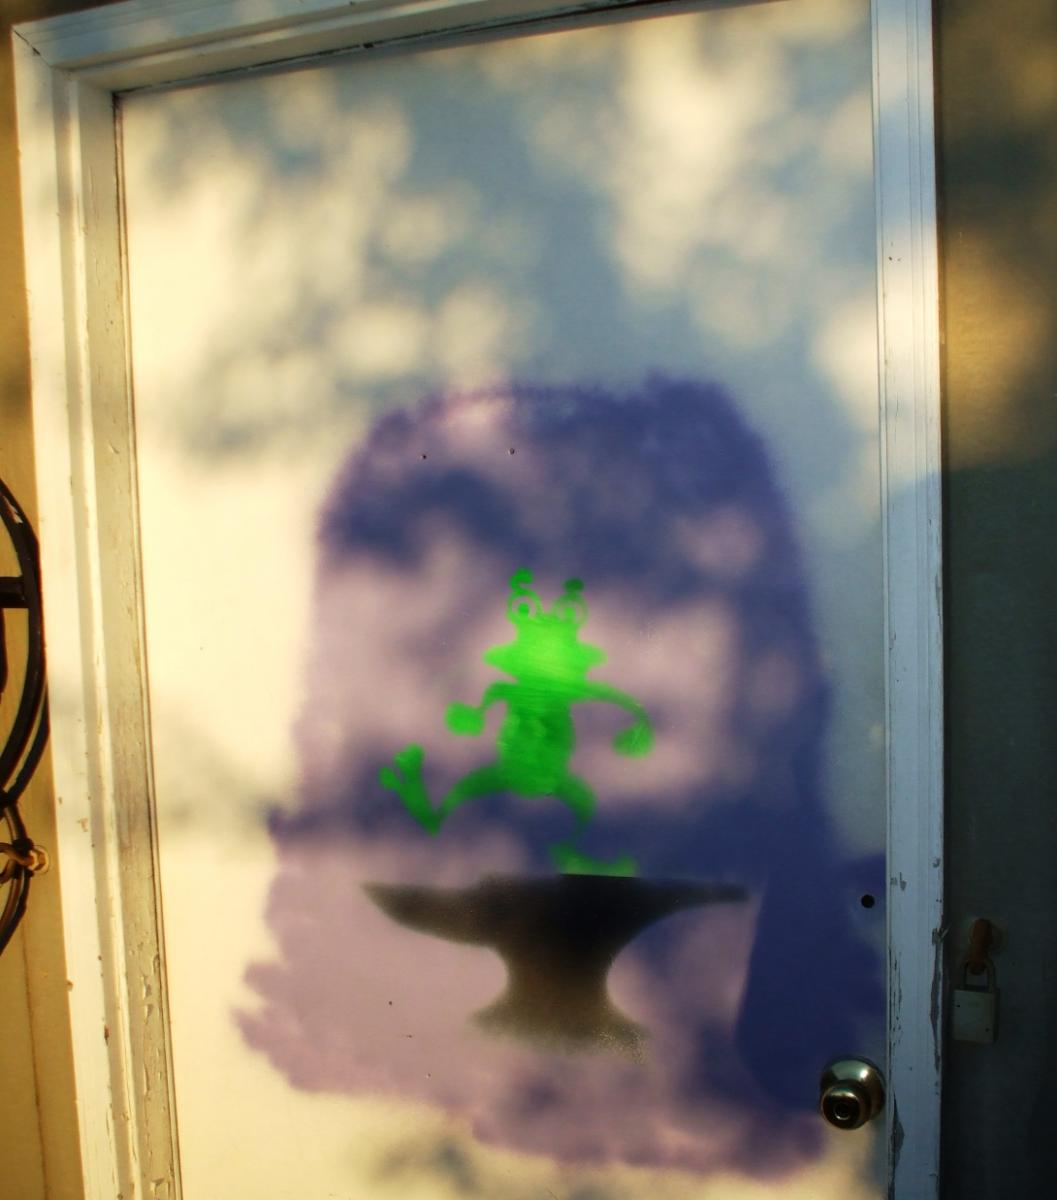 Frog-Door closer view